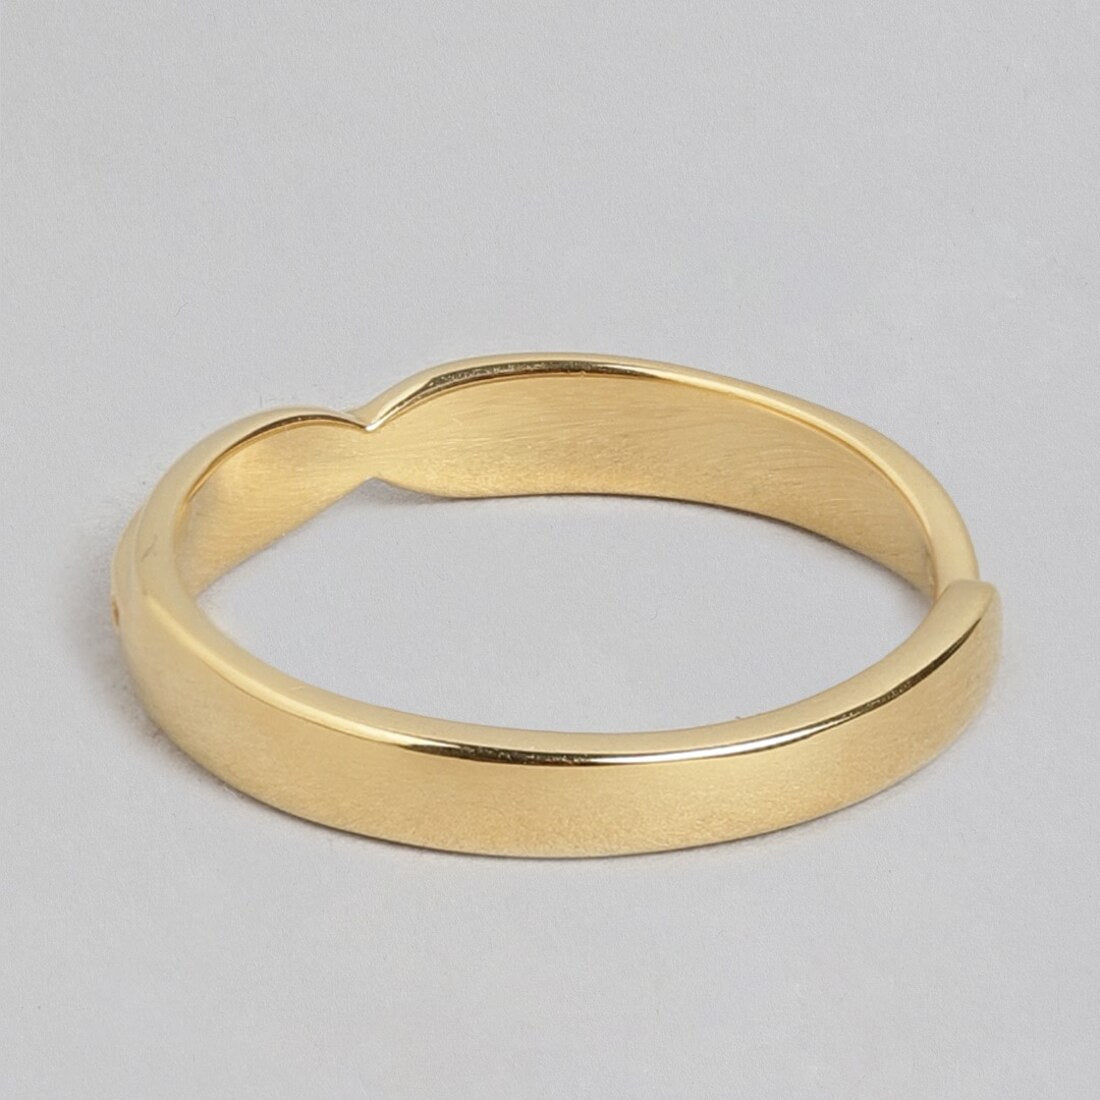 Radiant Sunburst Gold-Plated 925 Sterling Silver Adjustable Ring for Him (Adjustable)